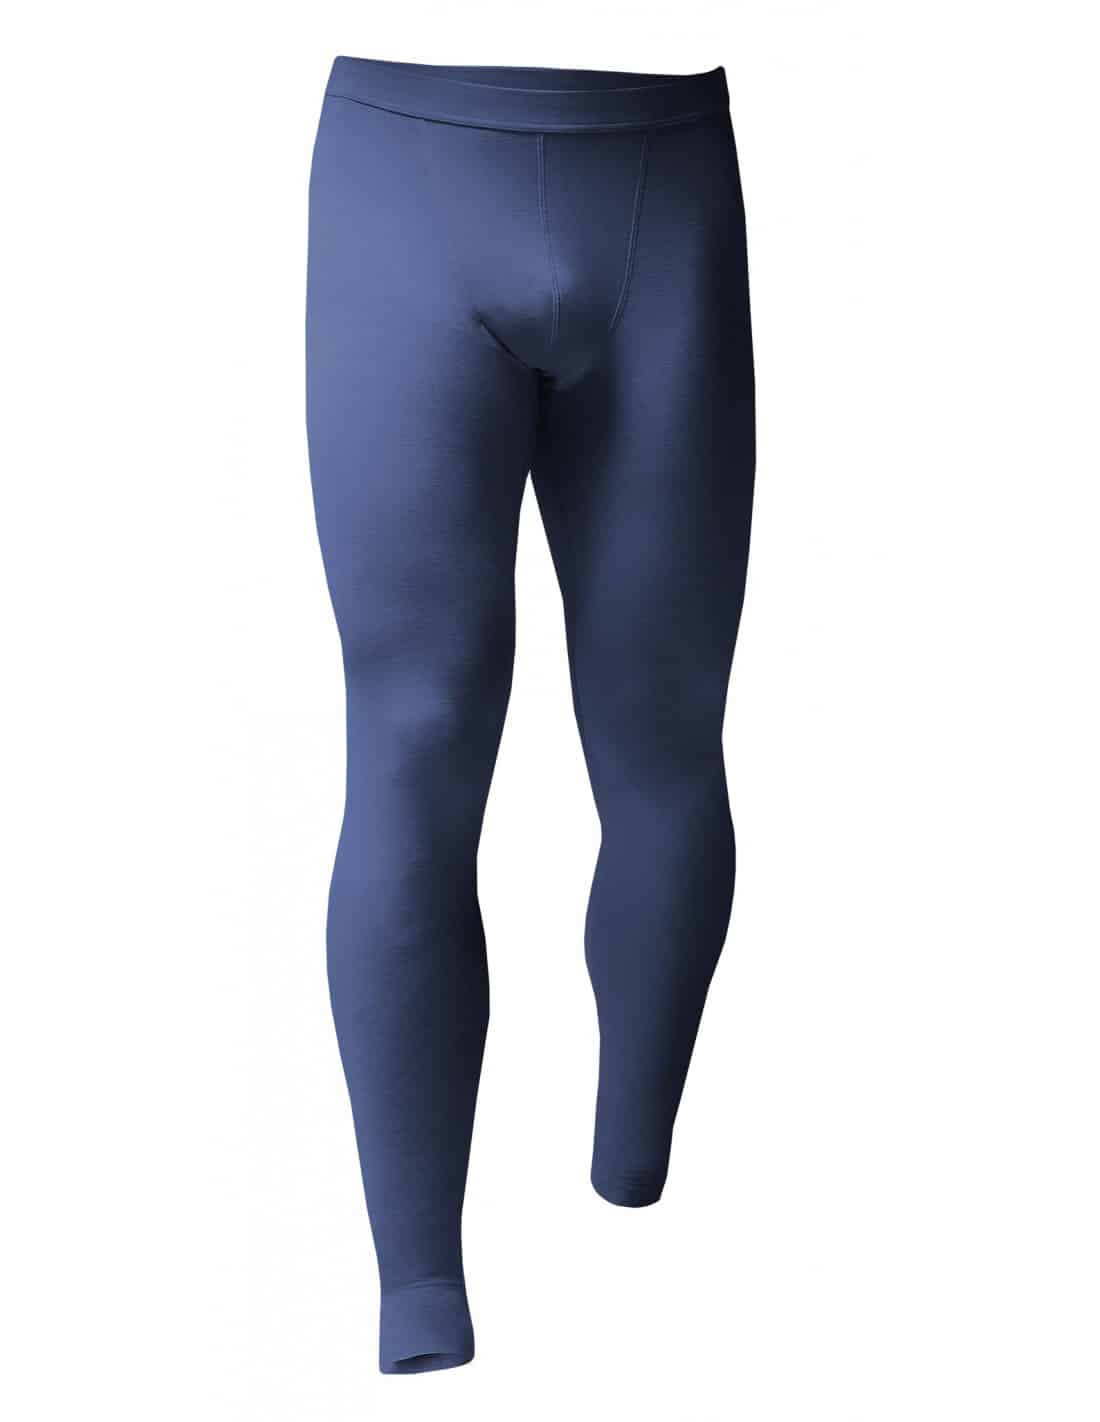 Sous-vêtement thermique 100% coton pour homme, legging fin, serré